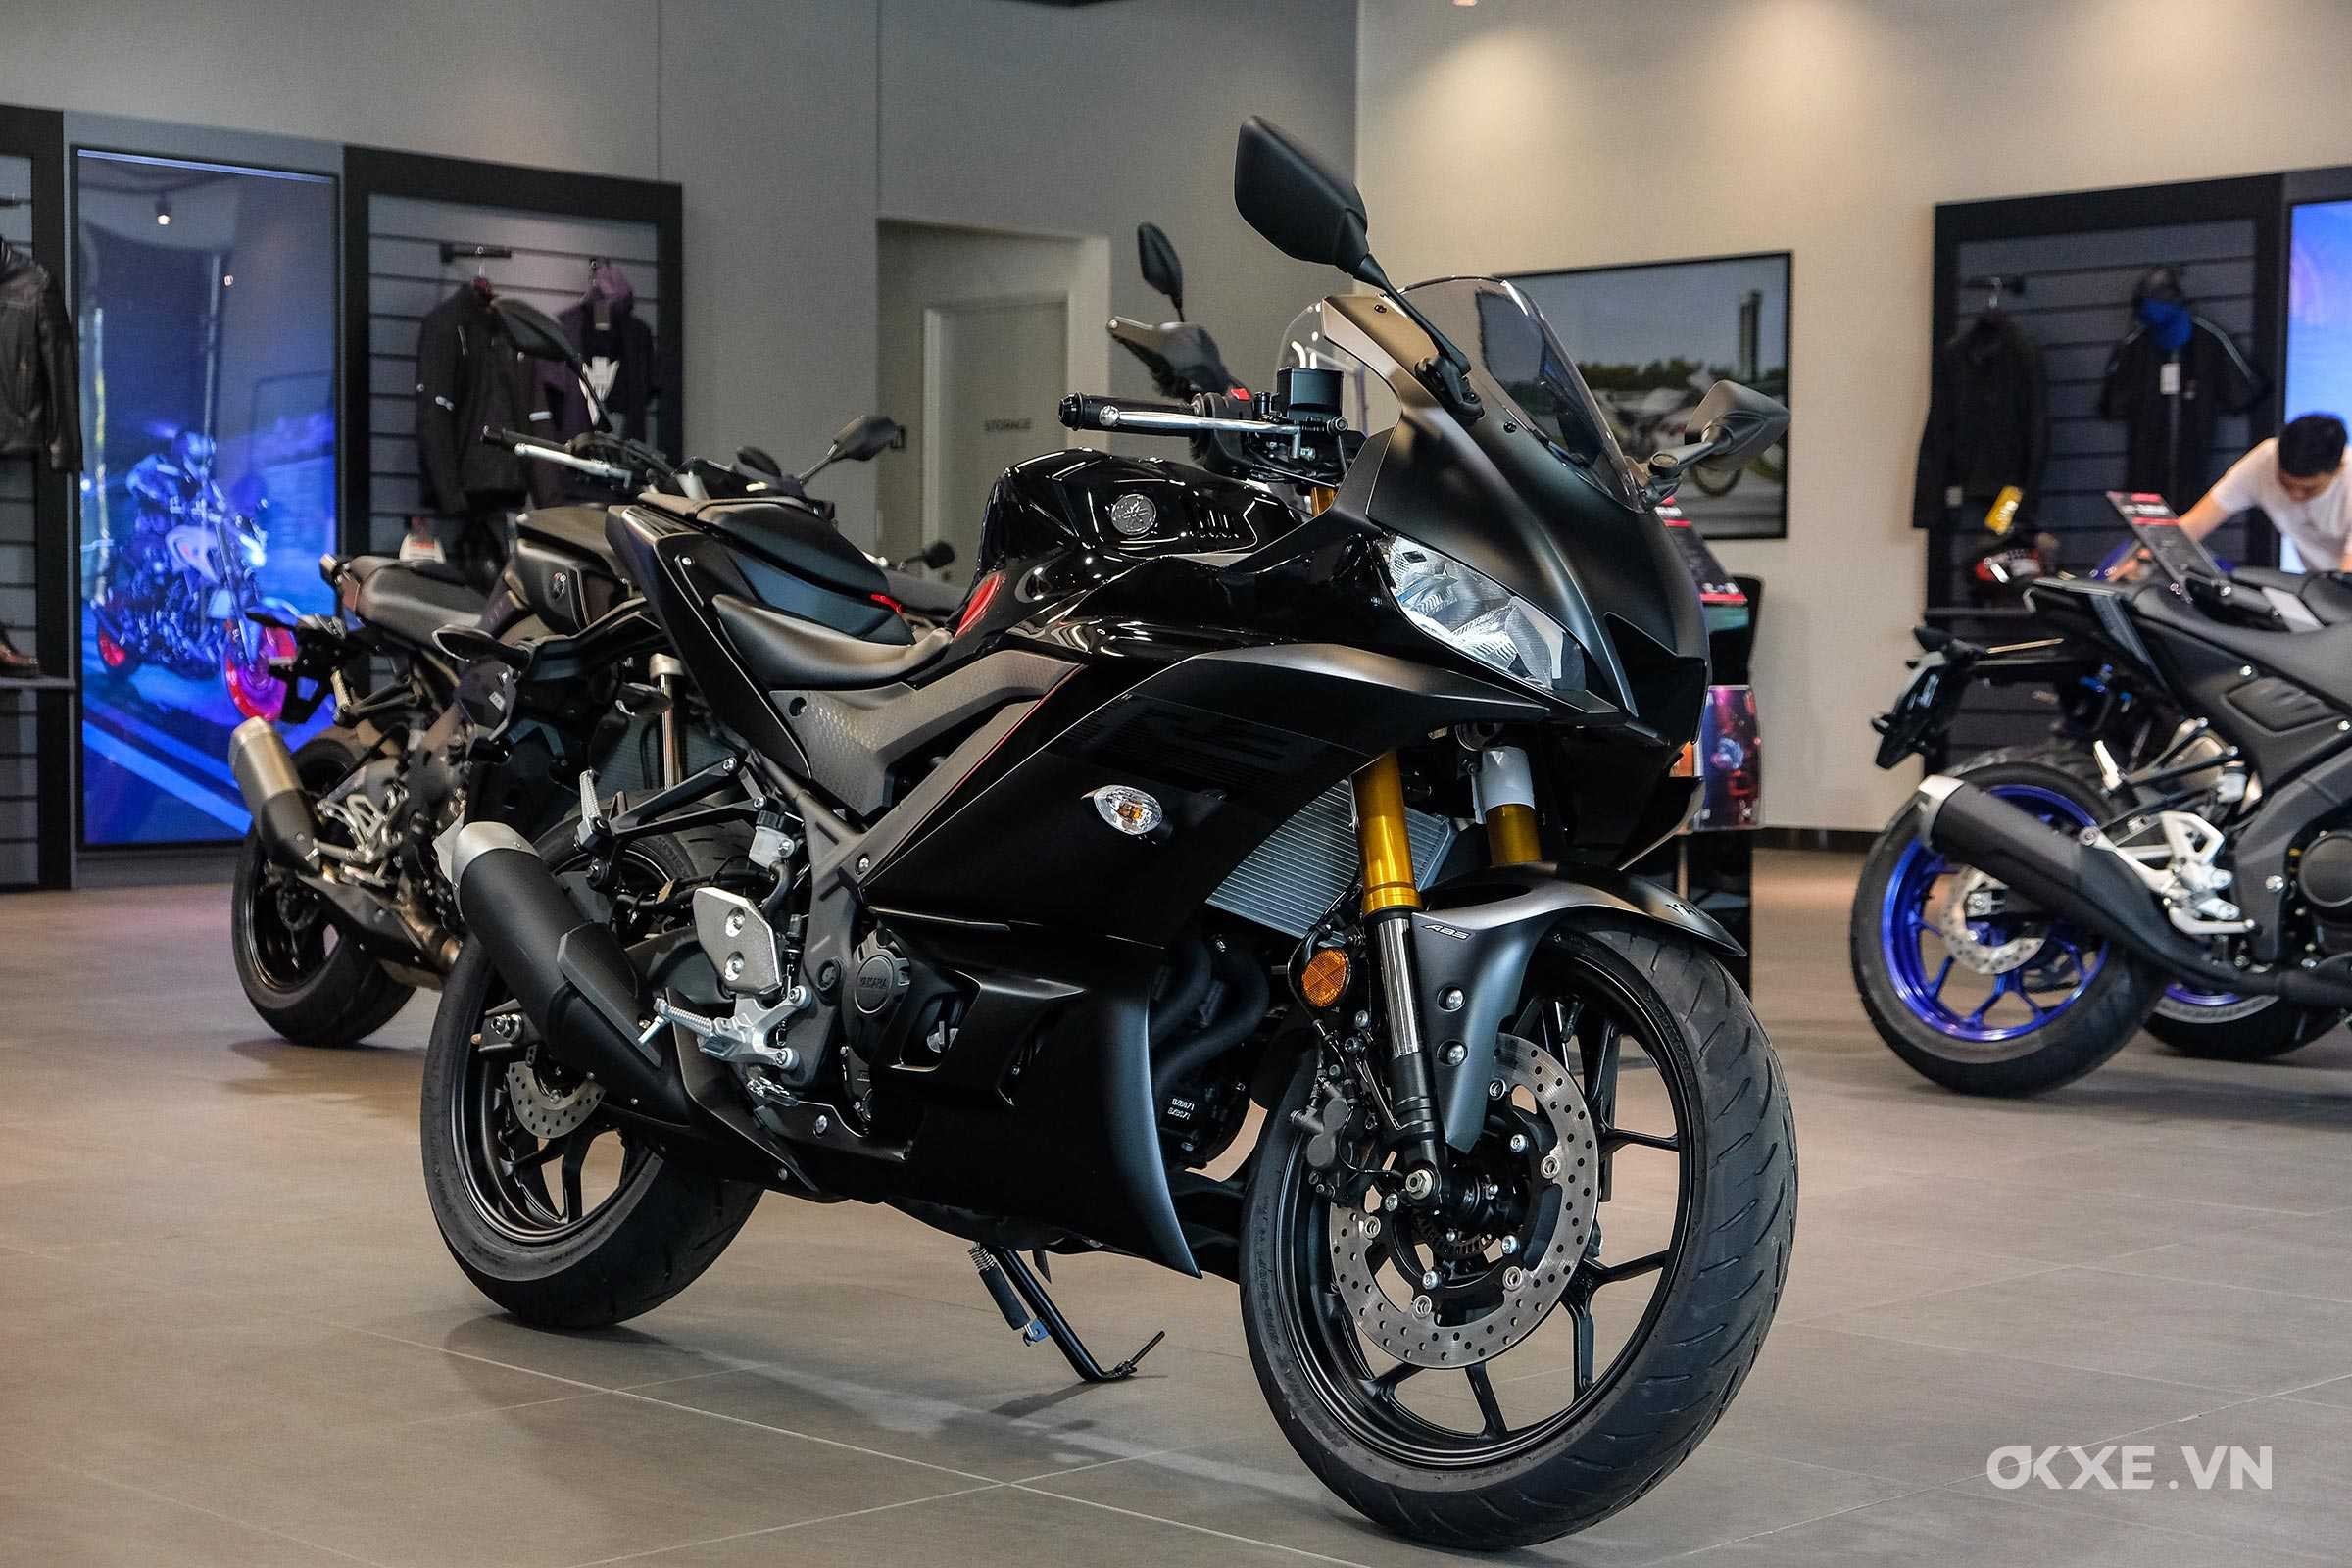 Đánh giá chi tiết Yamaha R3  moto PKL thể thao giá bán 129 triệu đồng tại  Việt Nam  MôTô Việt